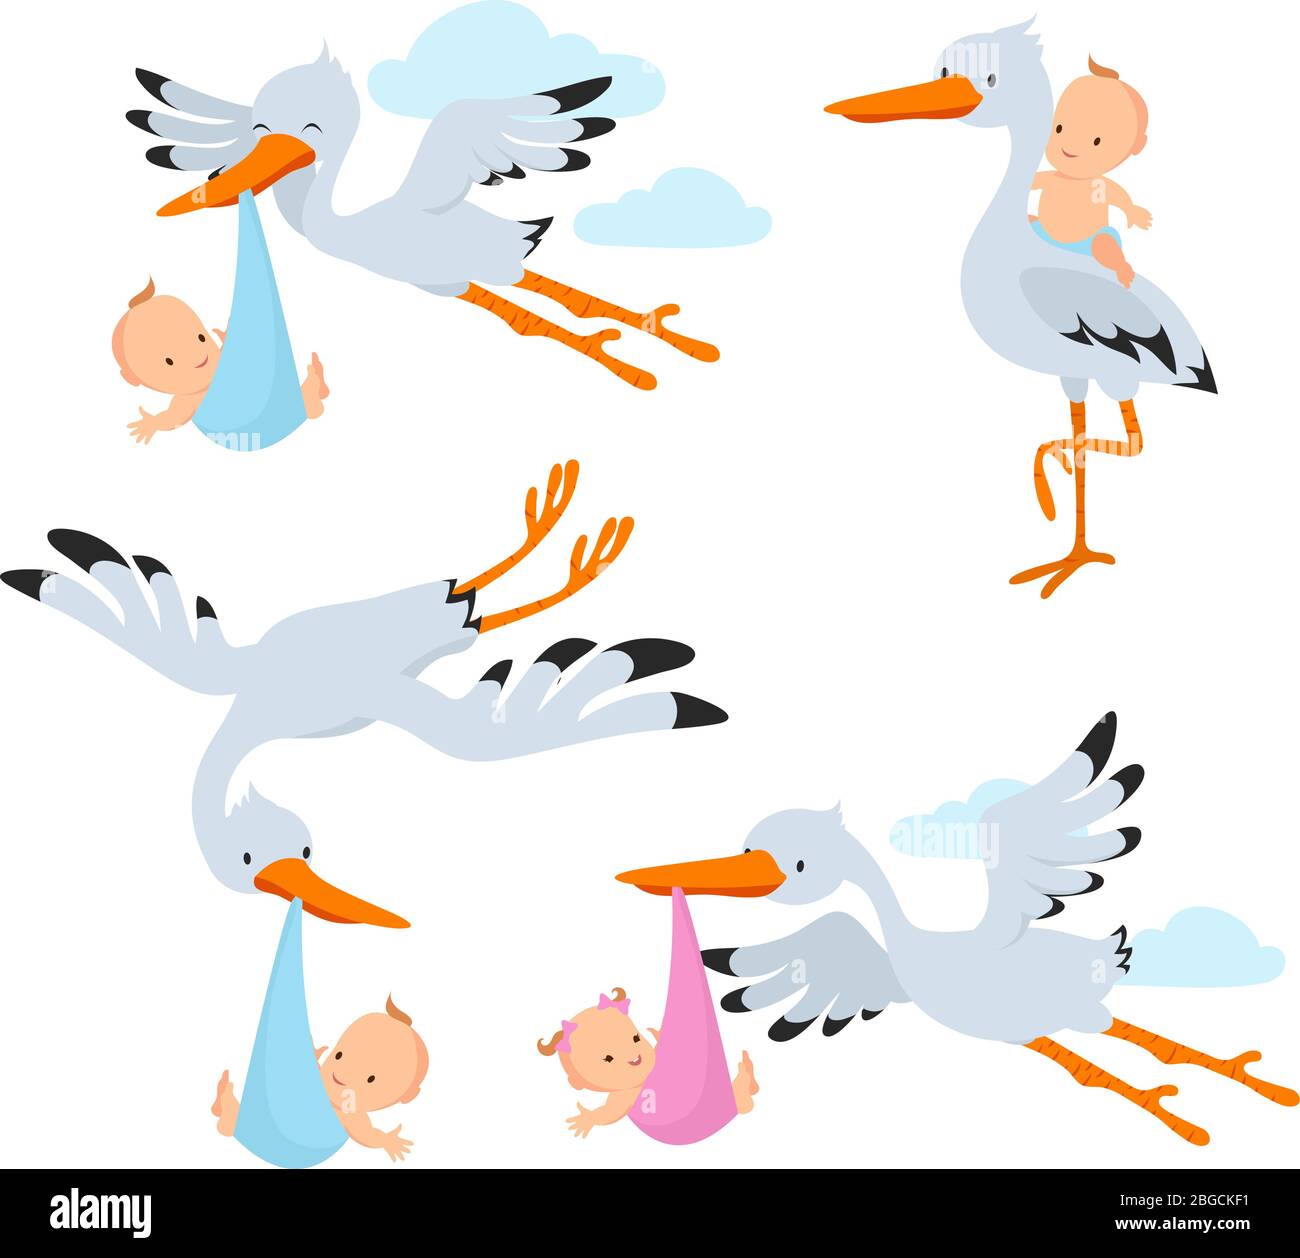 Cartoon flying storks and stork birds carrying baby vector set. Stork bird with baby, flying and carrying in beak illustration Stock Vector